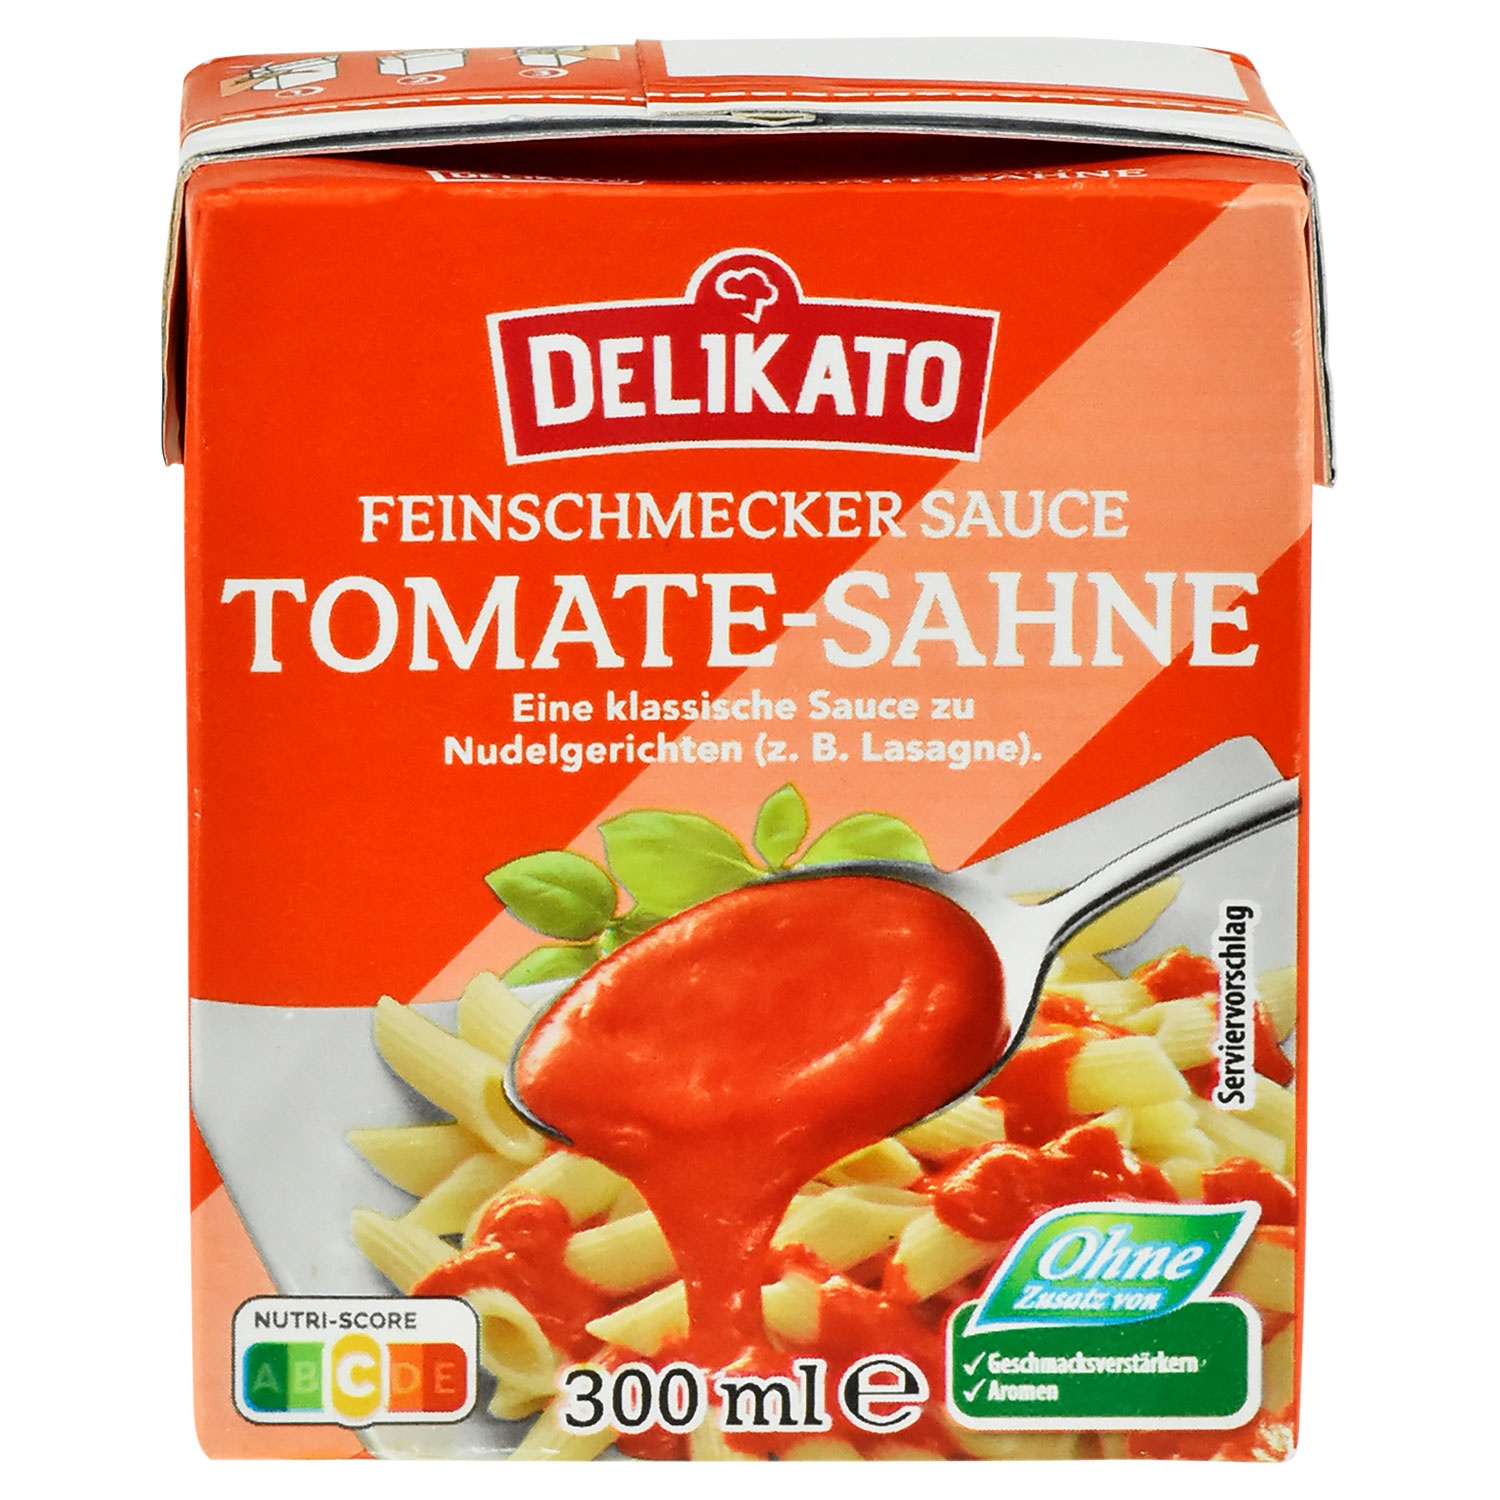 DELIKATO Feinschmecker Sauce 300 ml, Tomaten